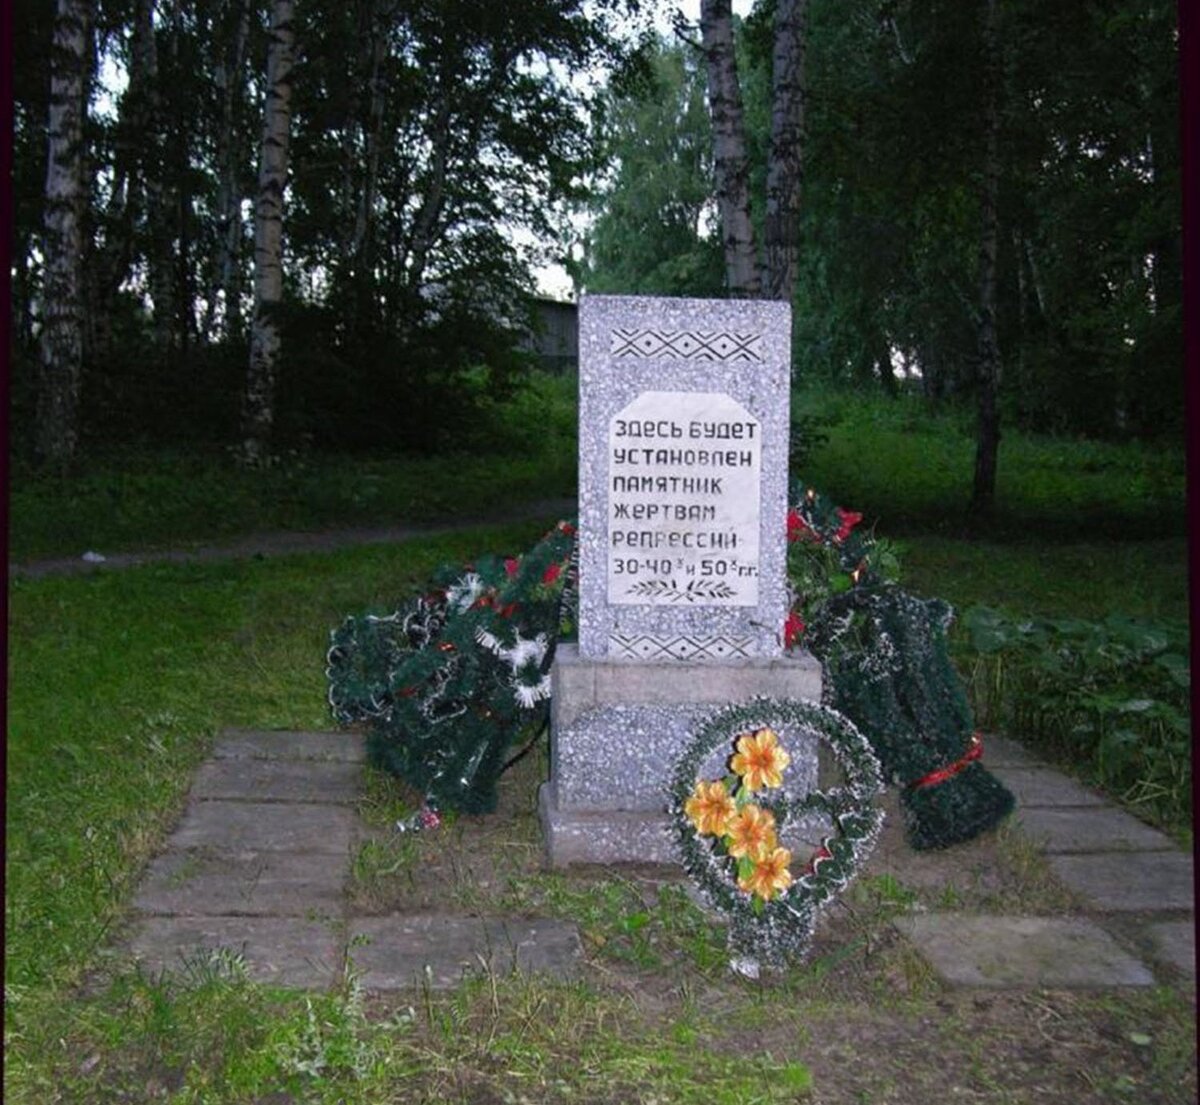 Kołpaszewo, Kołpaszewski Jar W latach trzydziestych XX w. funkcjonowało w tym miejscu więzienie i siedziba NKWD, gdzie wykonywano masowe egzekucje.